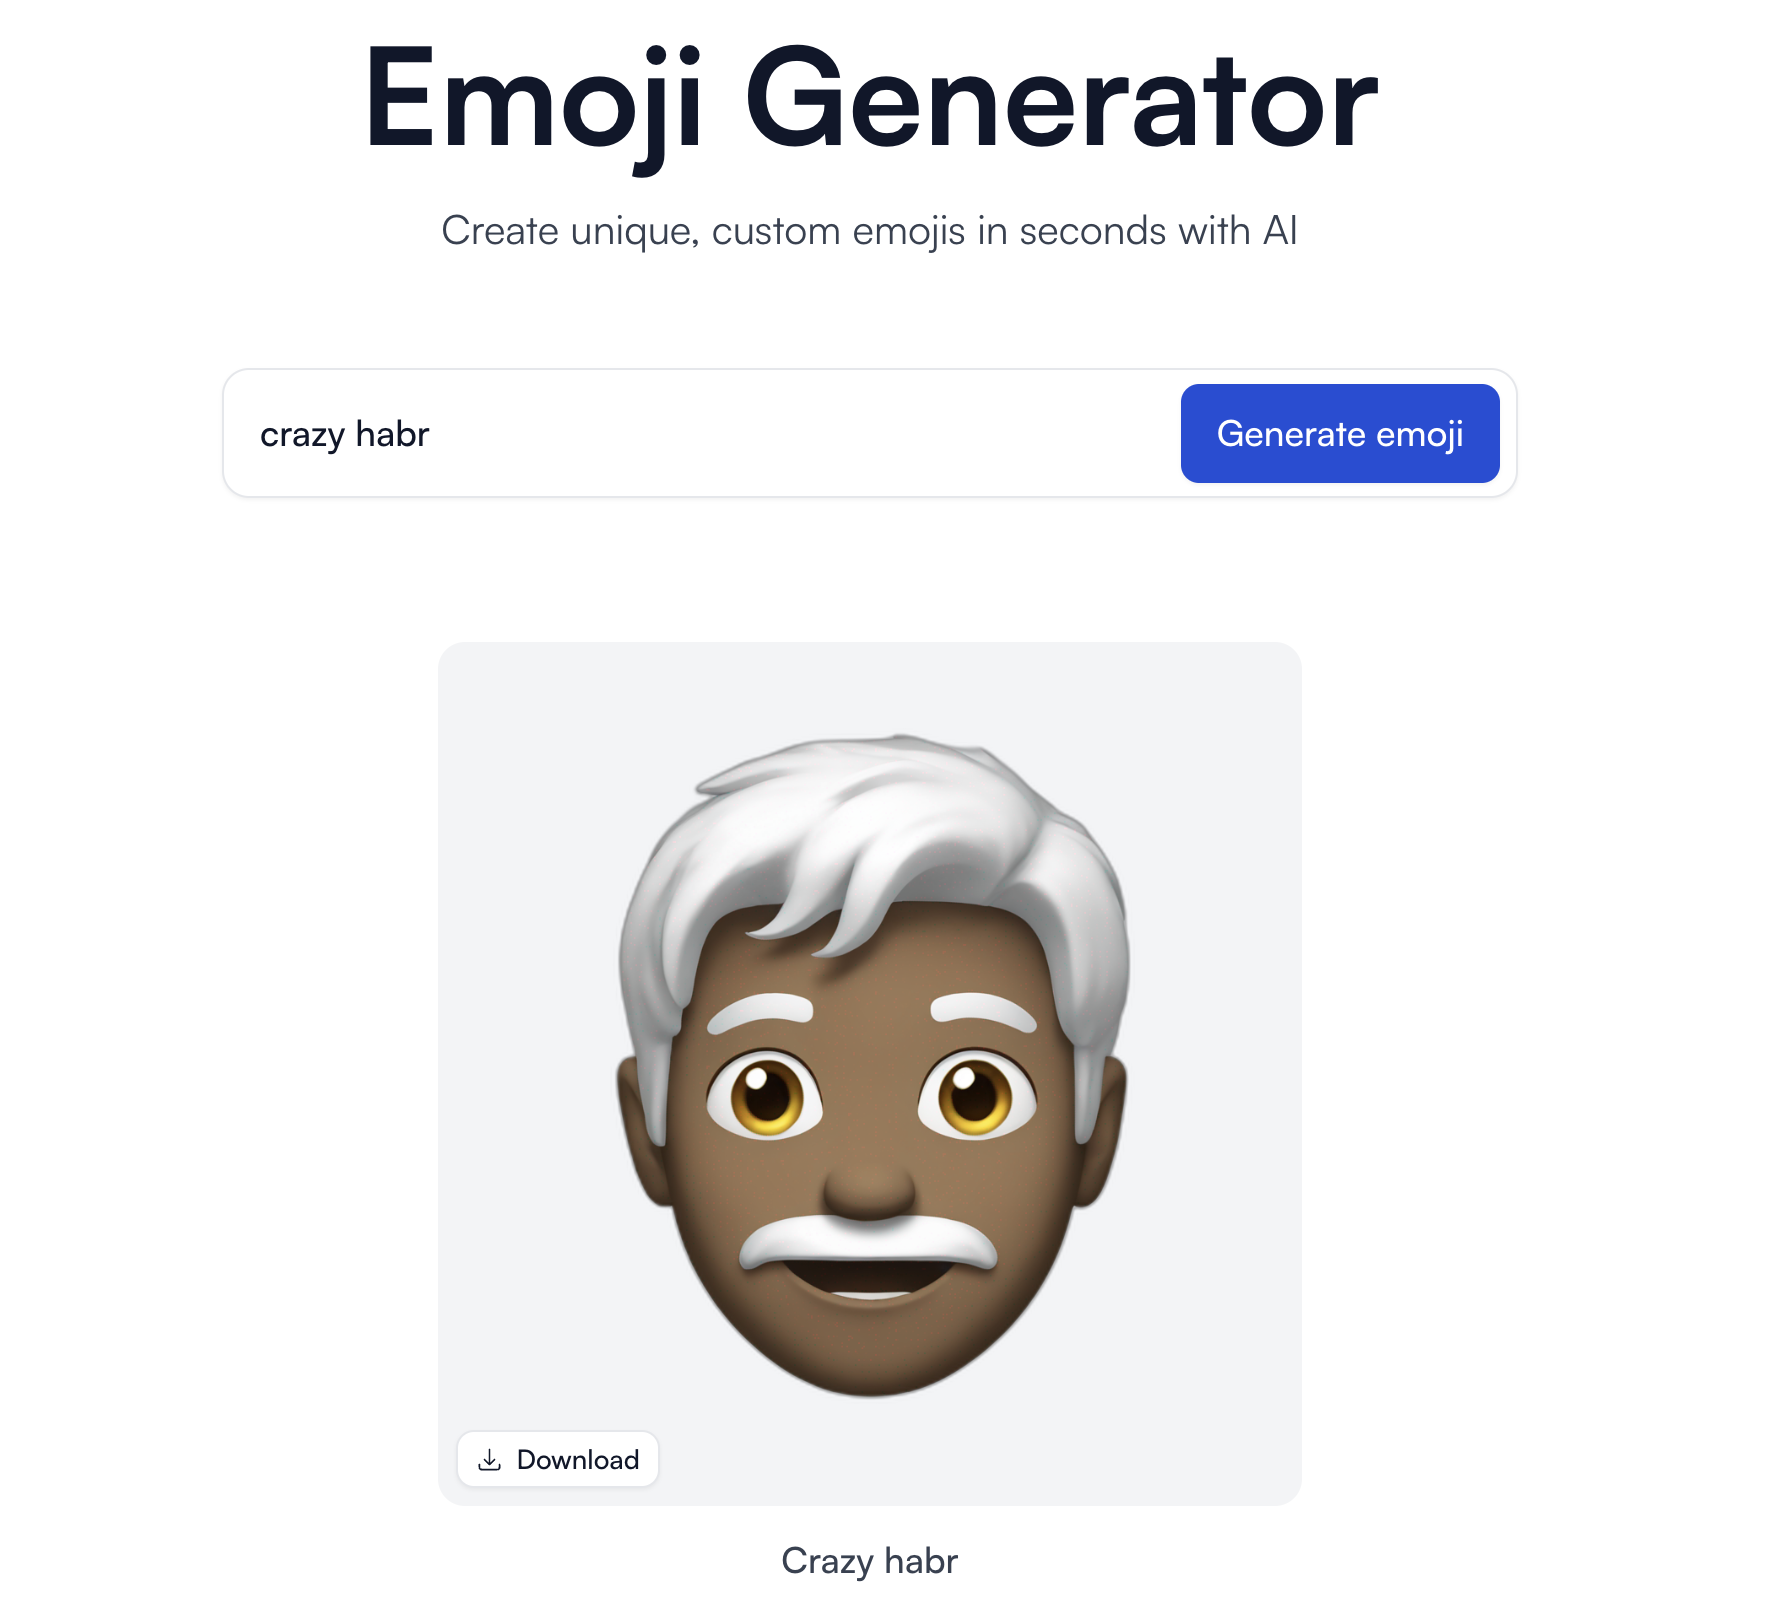 Генерация emoji по запросу "Crazy habr"